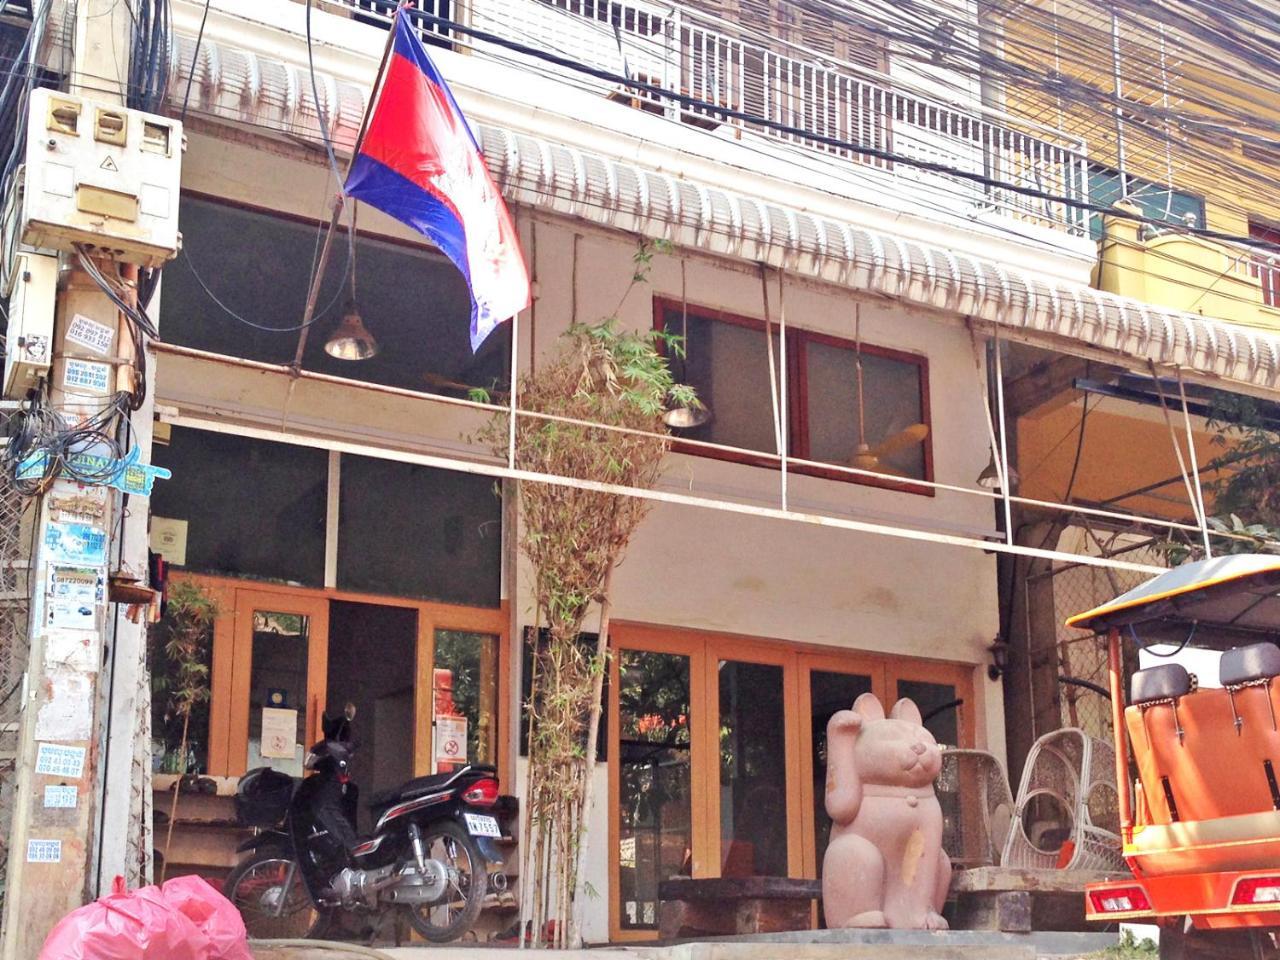 Boutique Dormitory Kochi-Ke Ciudad de Siem Riep Exterior foto